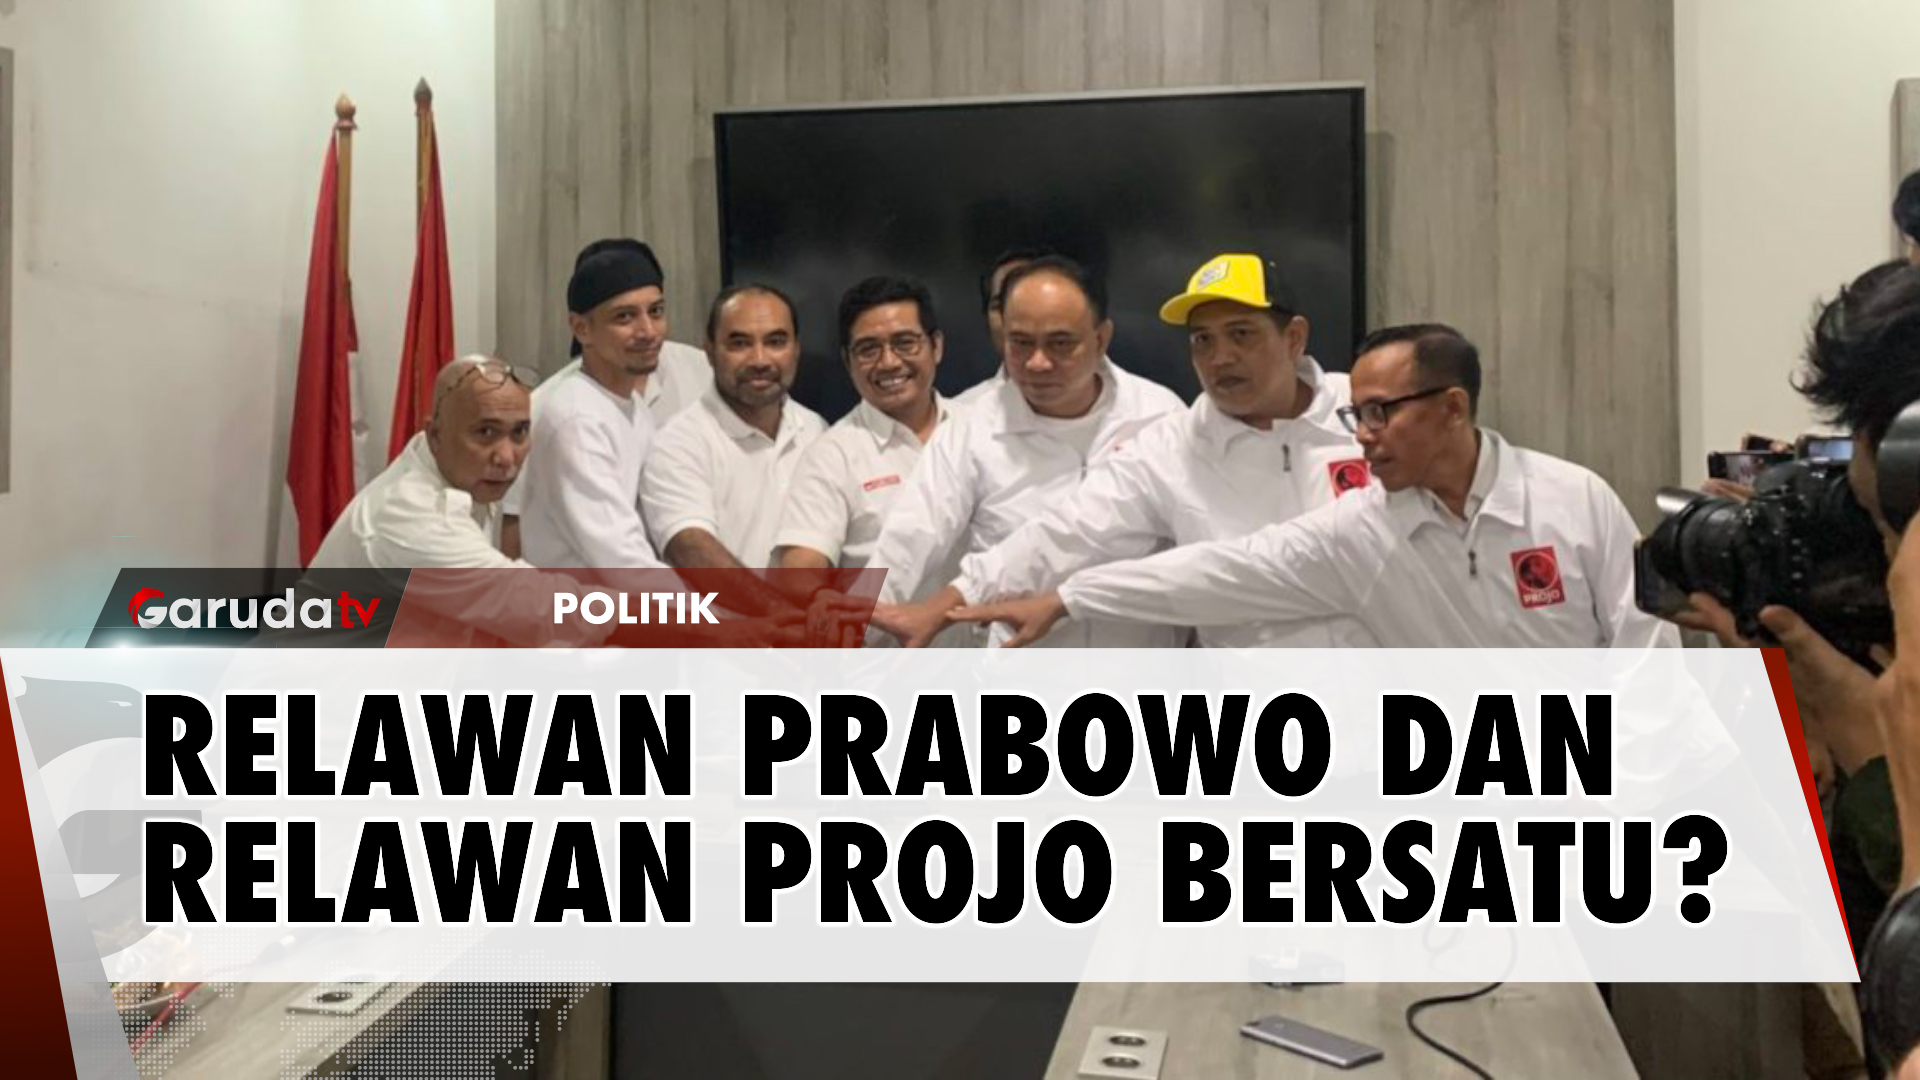 Relawan Projo Bertemu dengan Relawan Prabowo, Sinyal Gabung di 2024